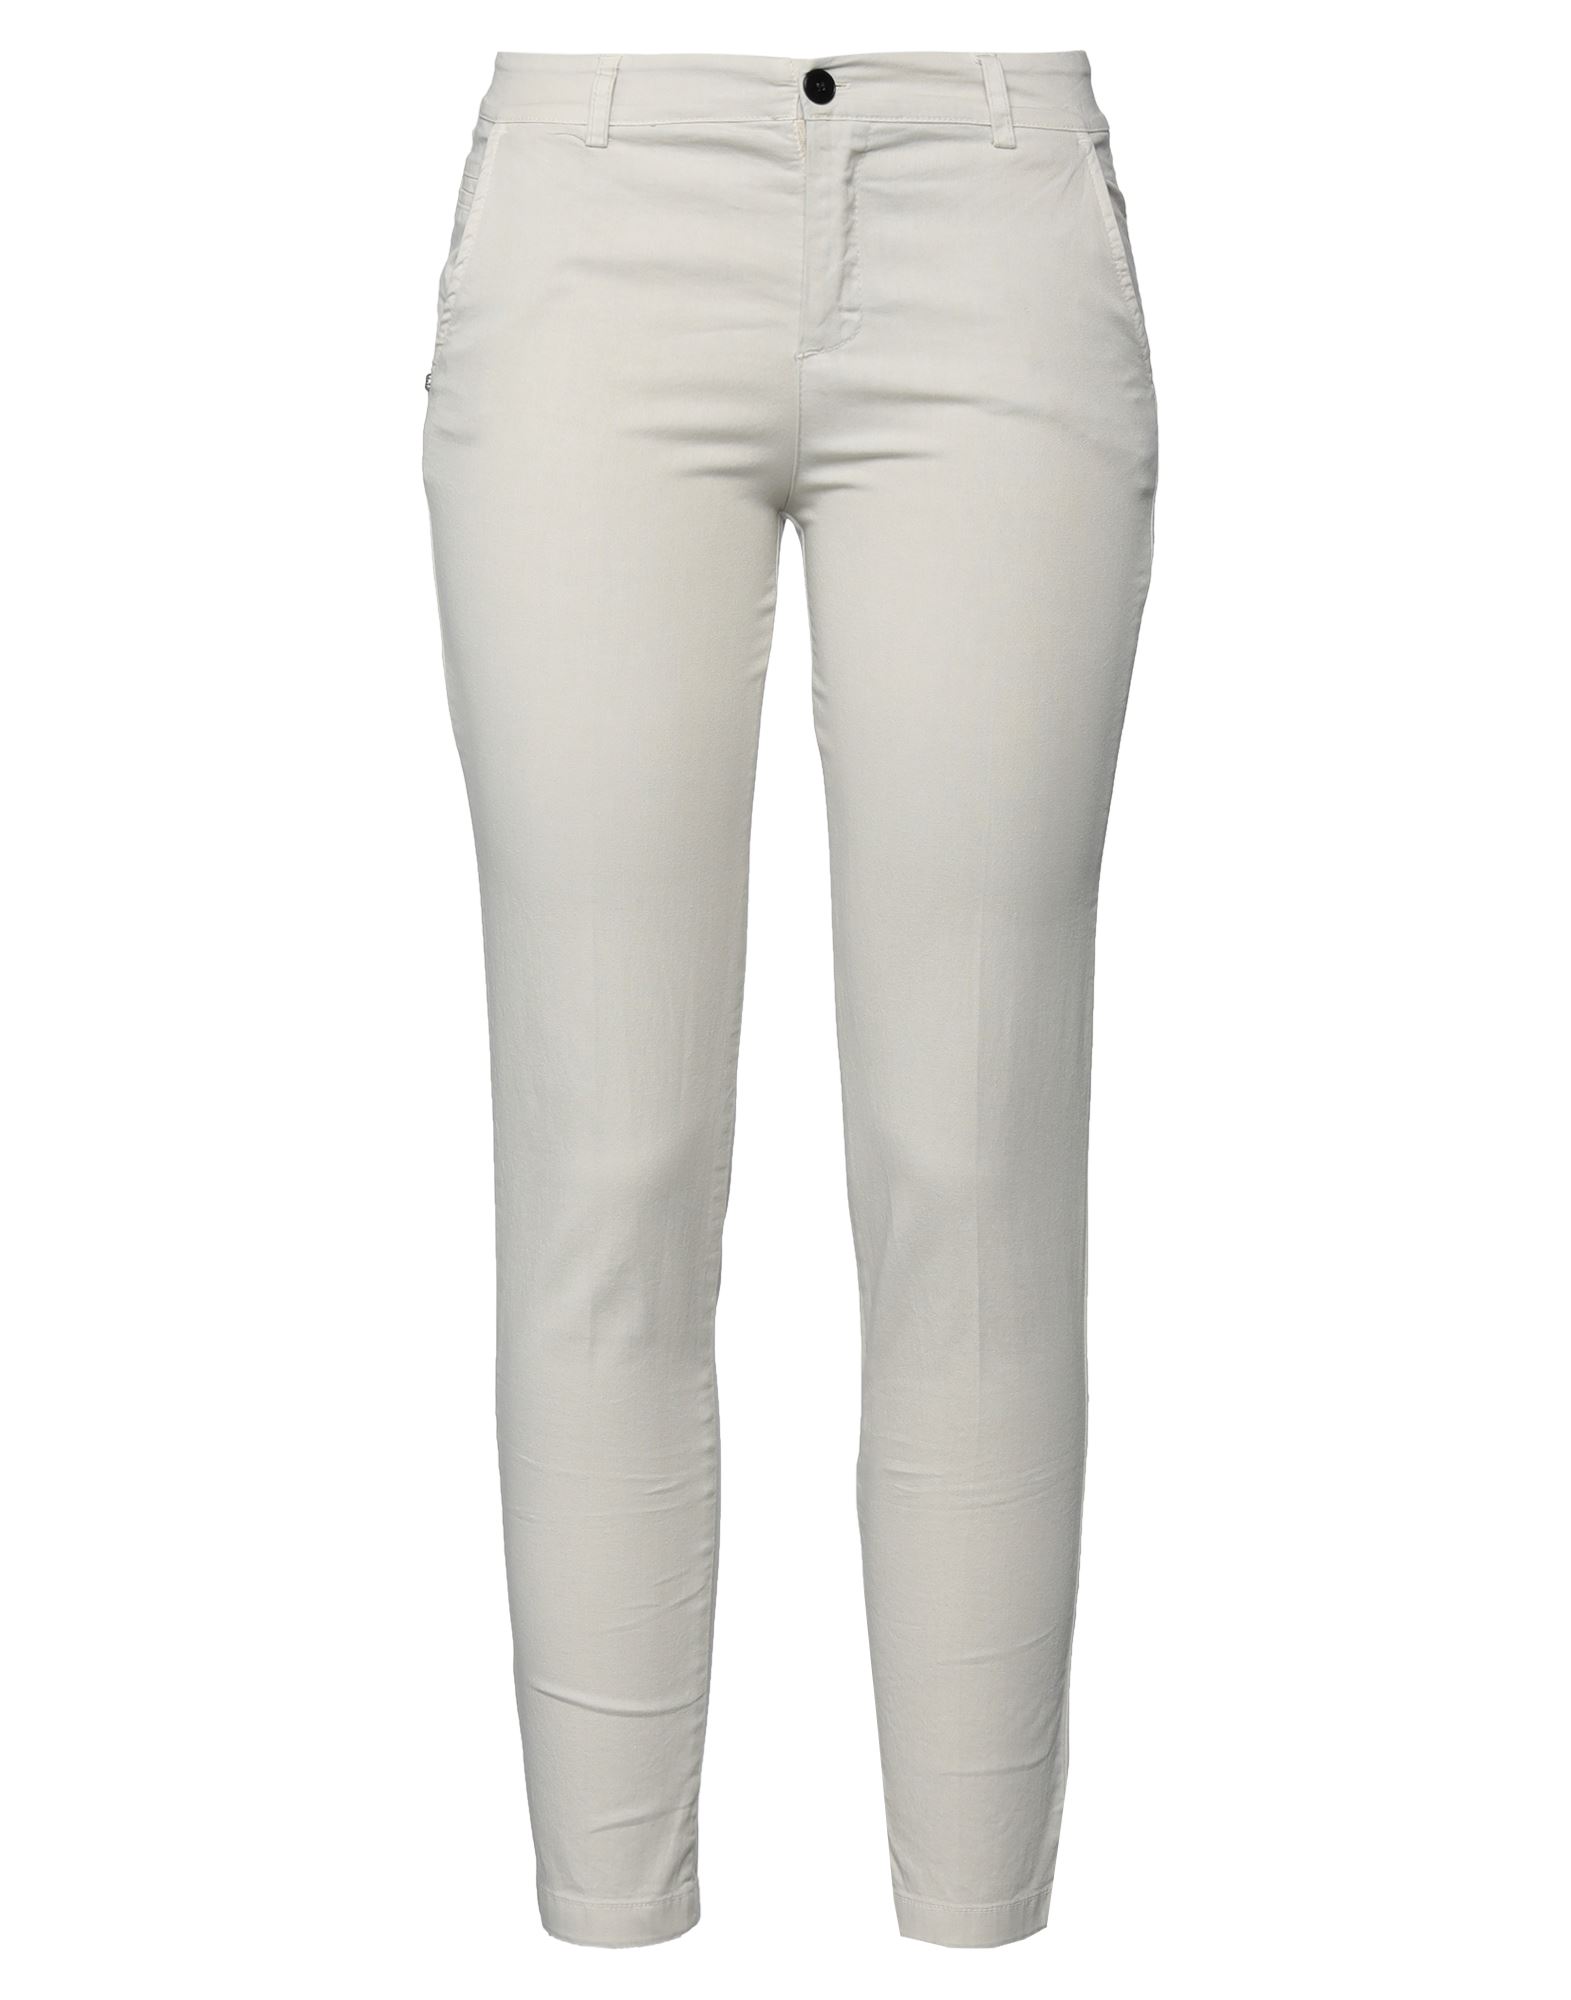 Shop Another Label Woman Pants Light Grey Size 4 Cotton, Elastane